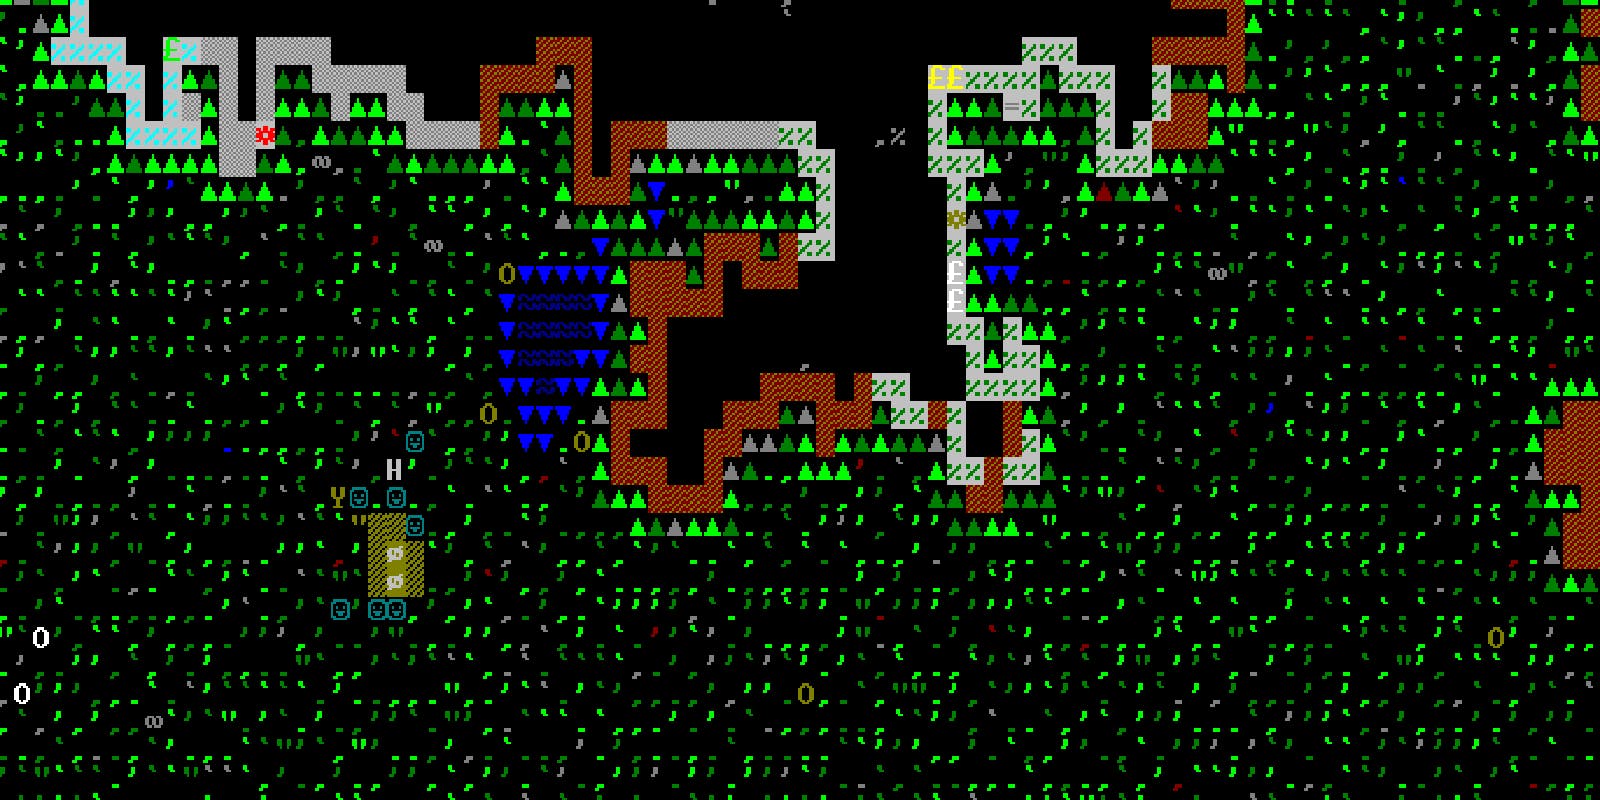 dwarf fortress embark 